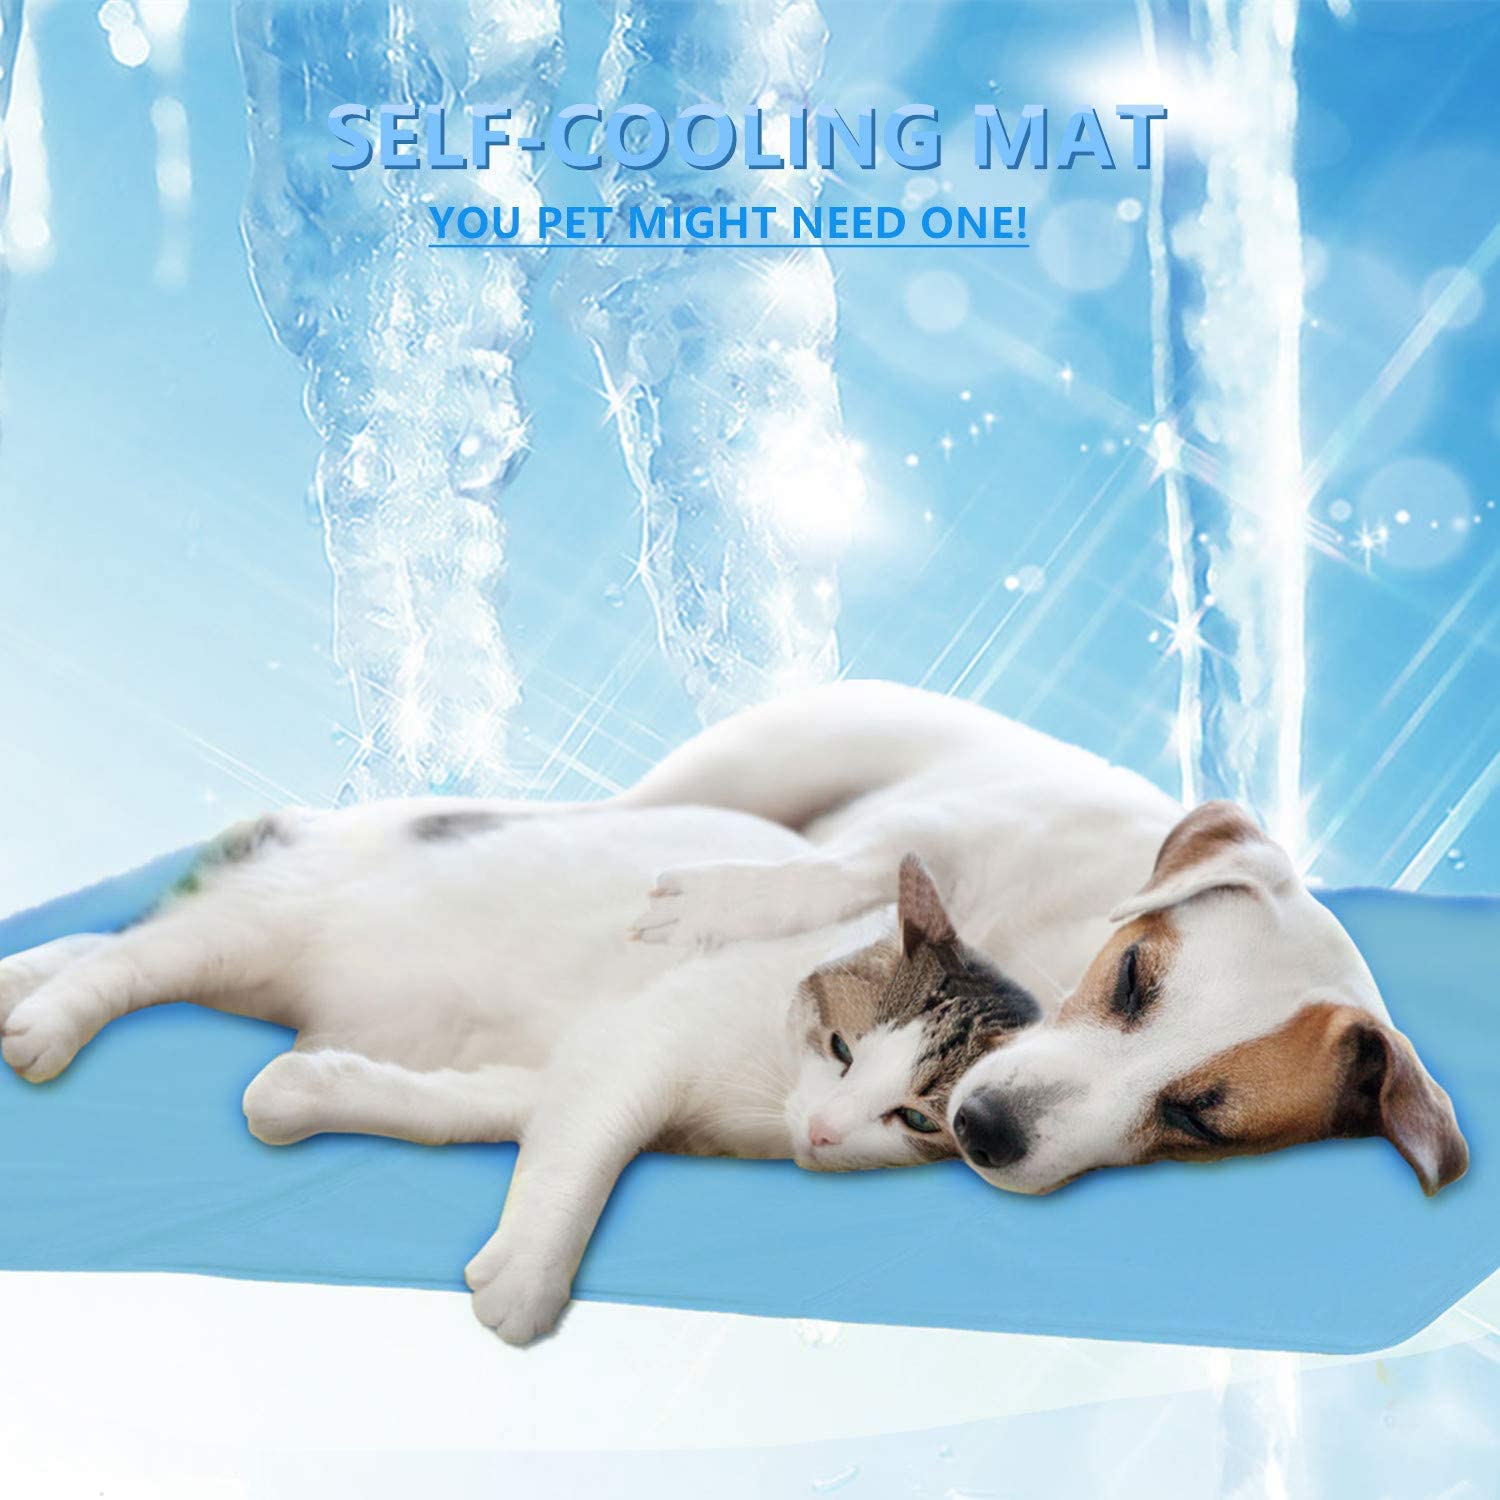  ForUUU Alfombrilla de Refrigeración Animales, Manta para Perros Fria Alfombra Refrescante para Mascotas Animales Manta de Dormir Fresco Cojín Azul (M: 21 * 15 in (70 * 50 cm)) 